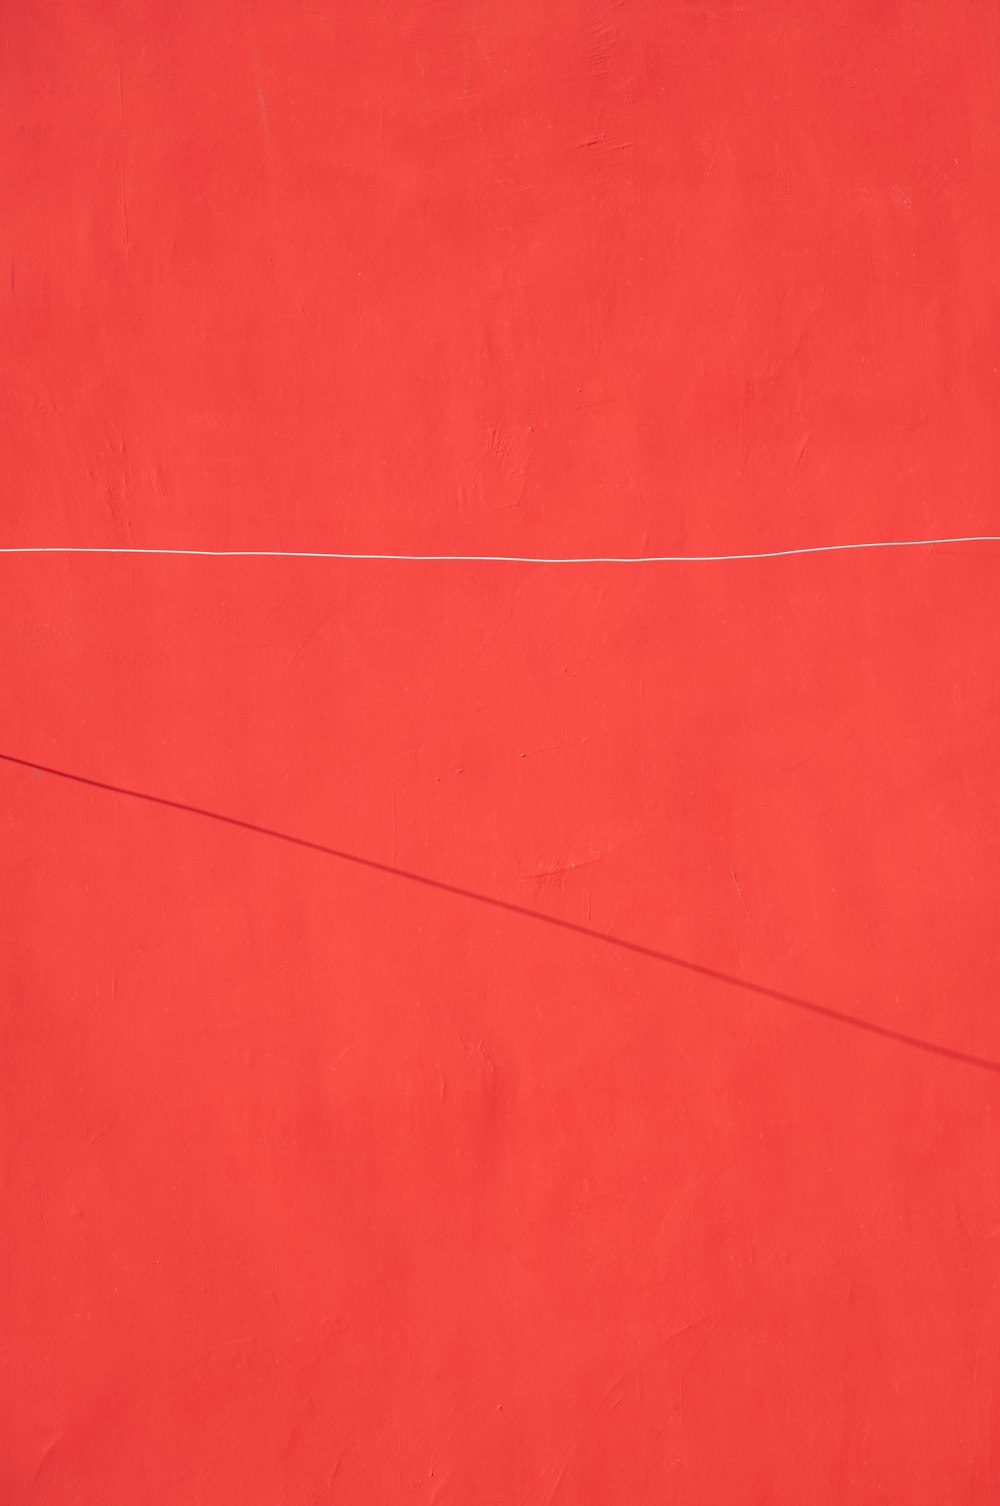 una pared roja con una línea blanca